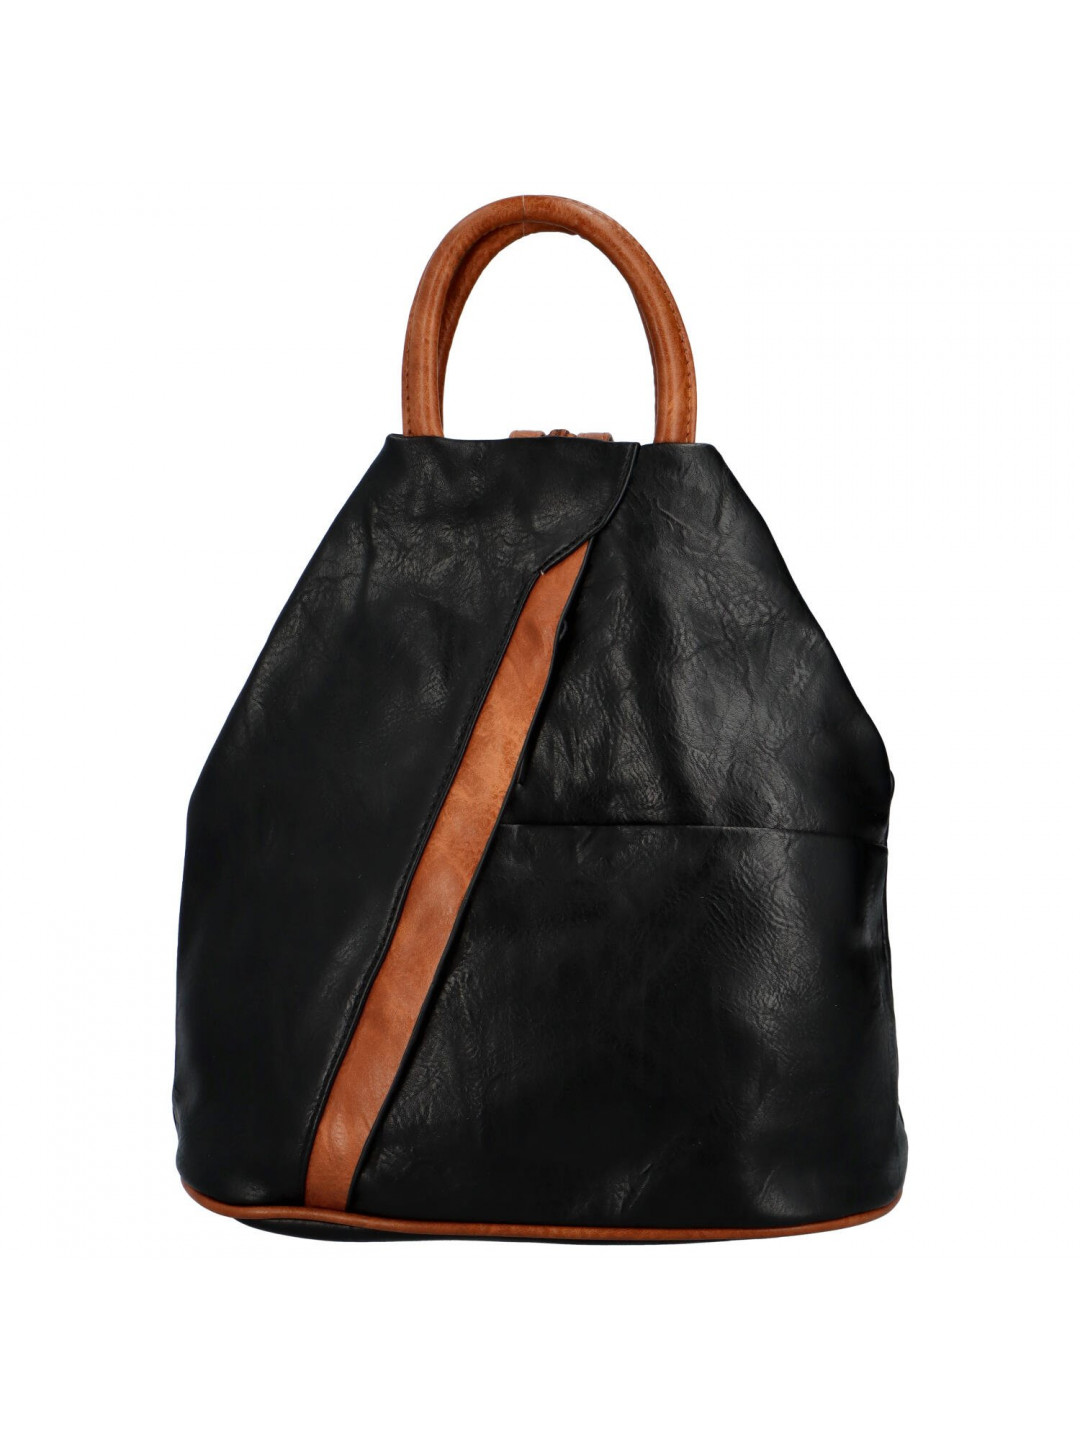 Dámský koženkový batůžek s asymetrickými kapsami Novala černá